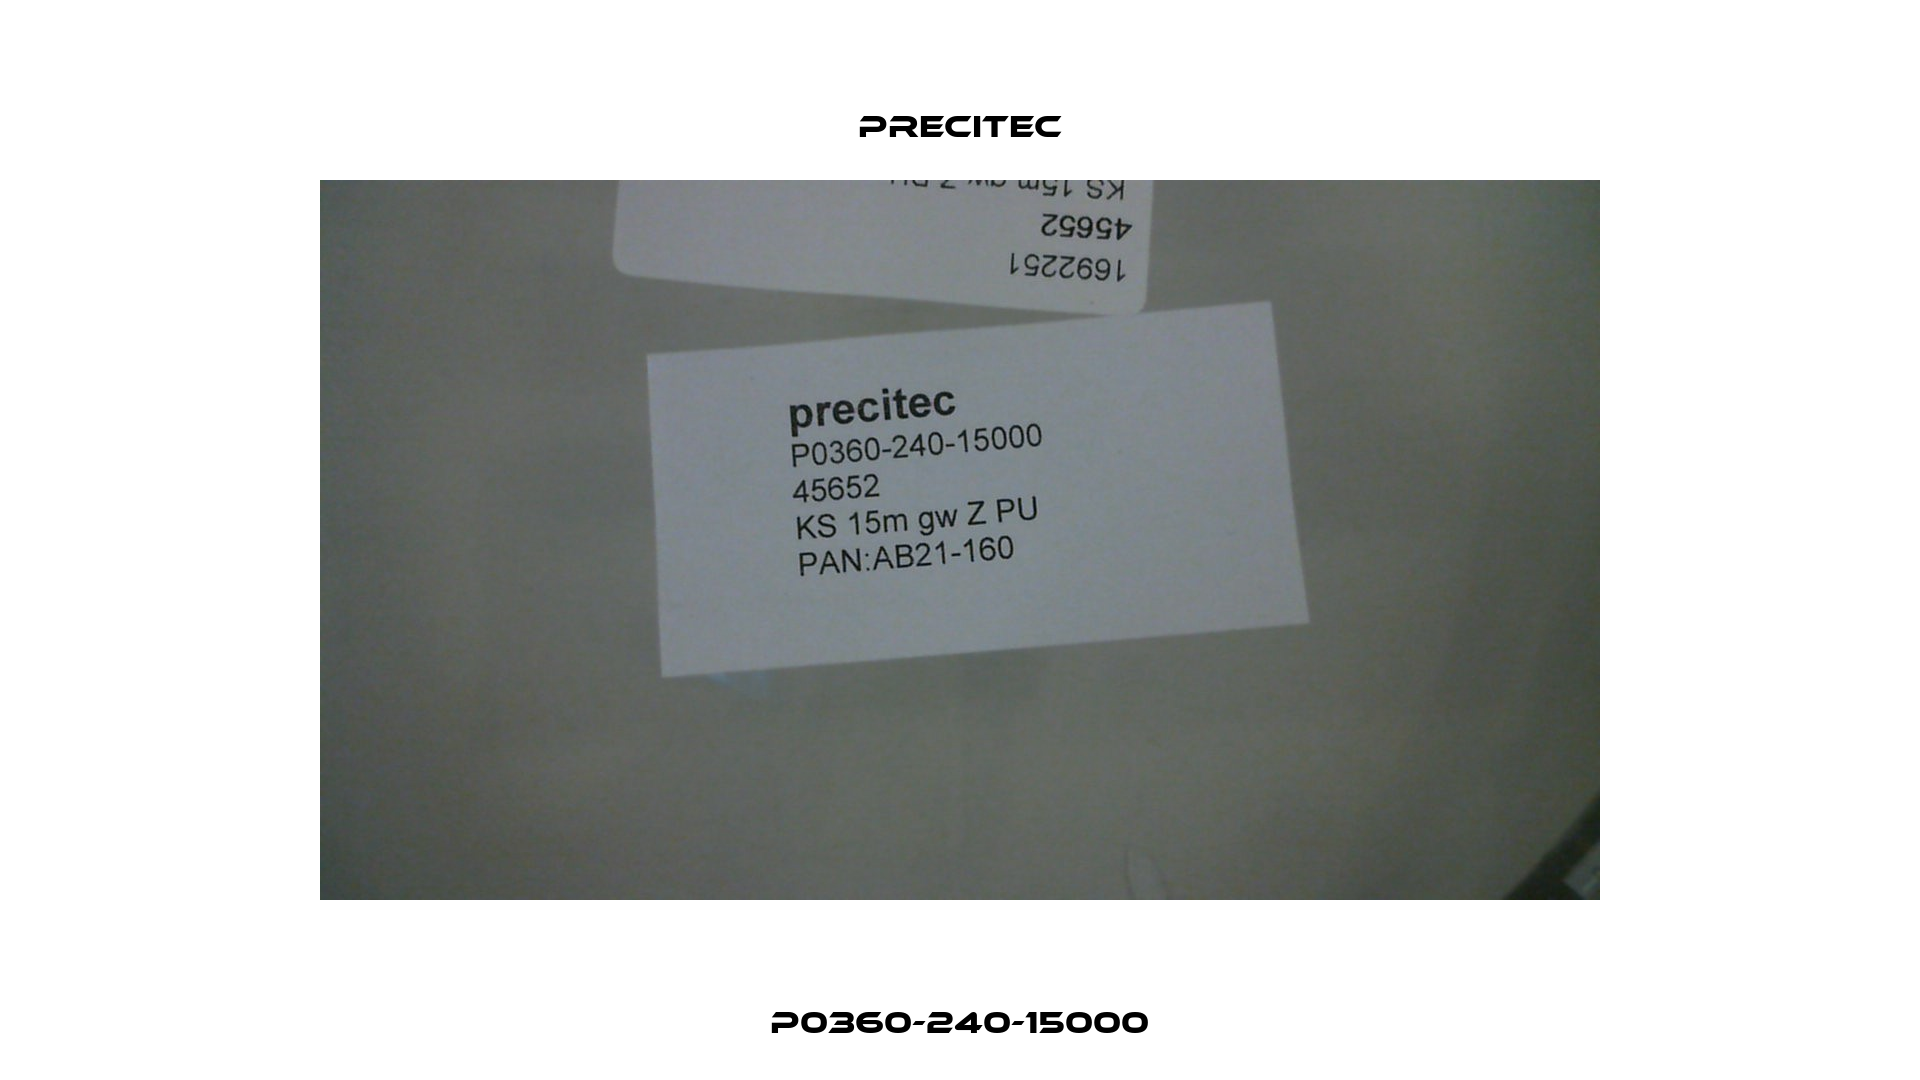 P0360-240-15000 Precitec